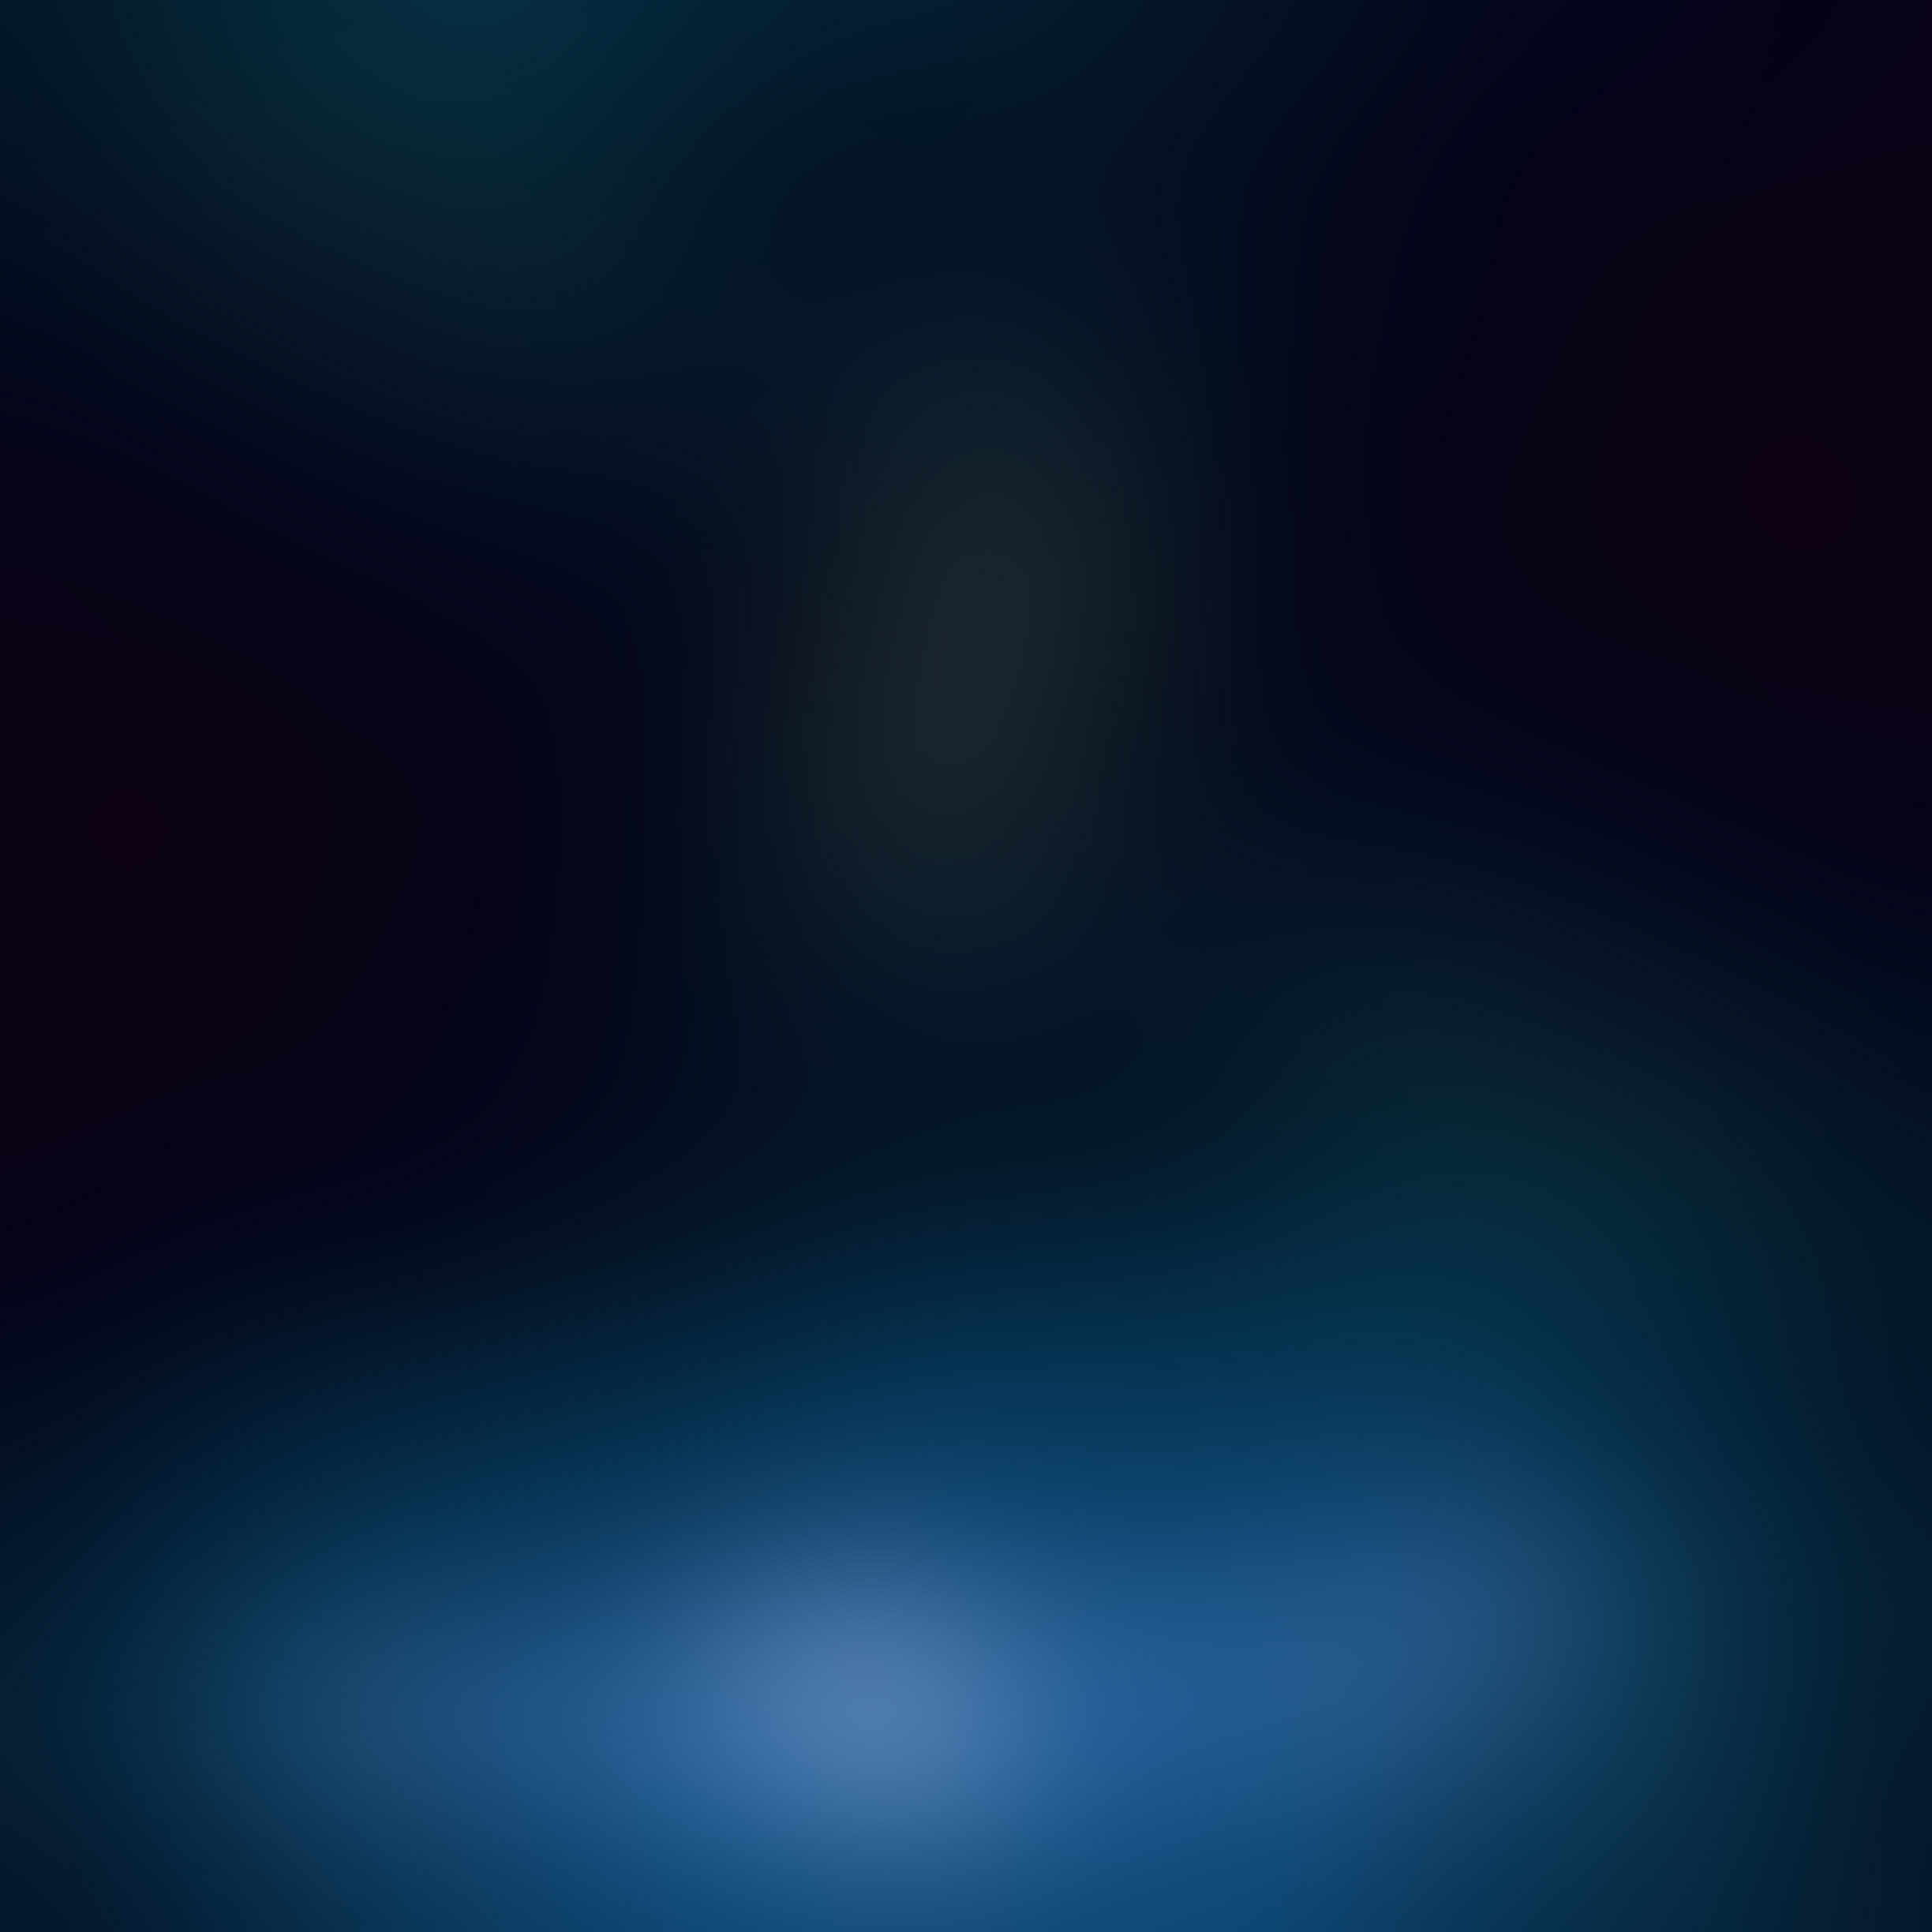 Ios7 Rain Blur Parallax HD iPhone iPad Wallpaper